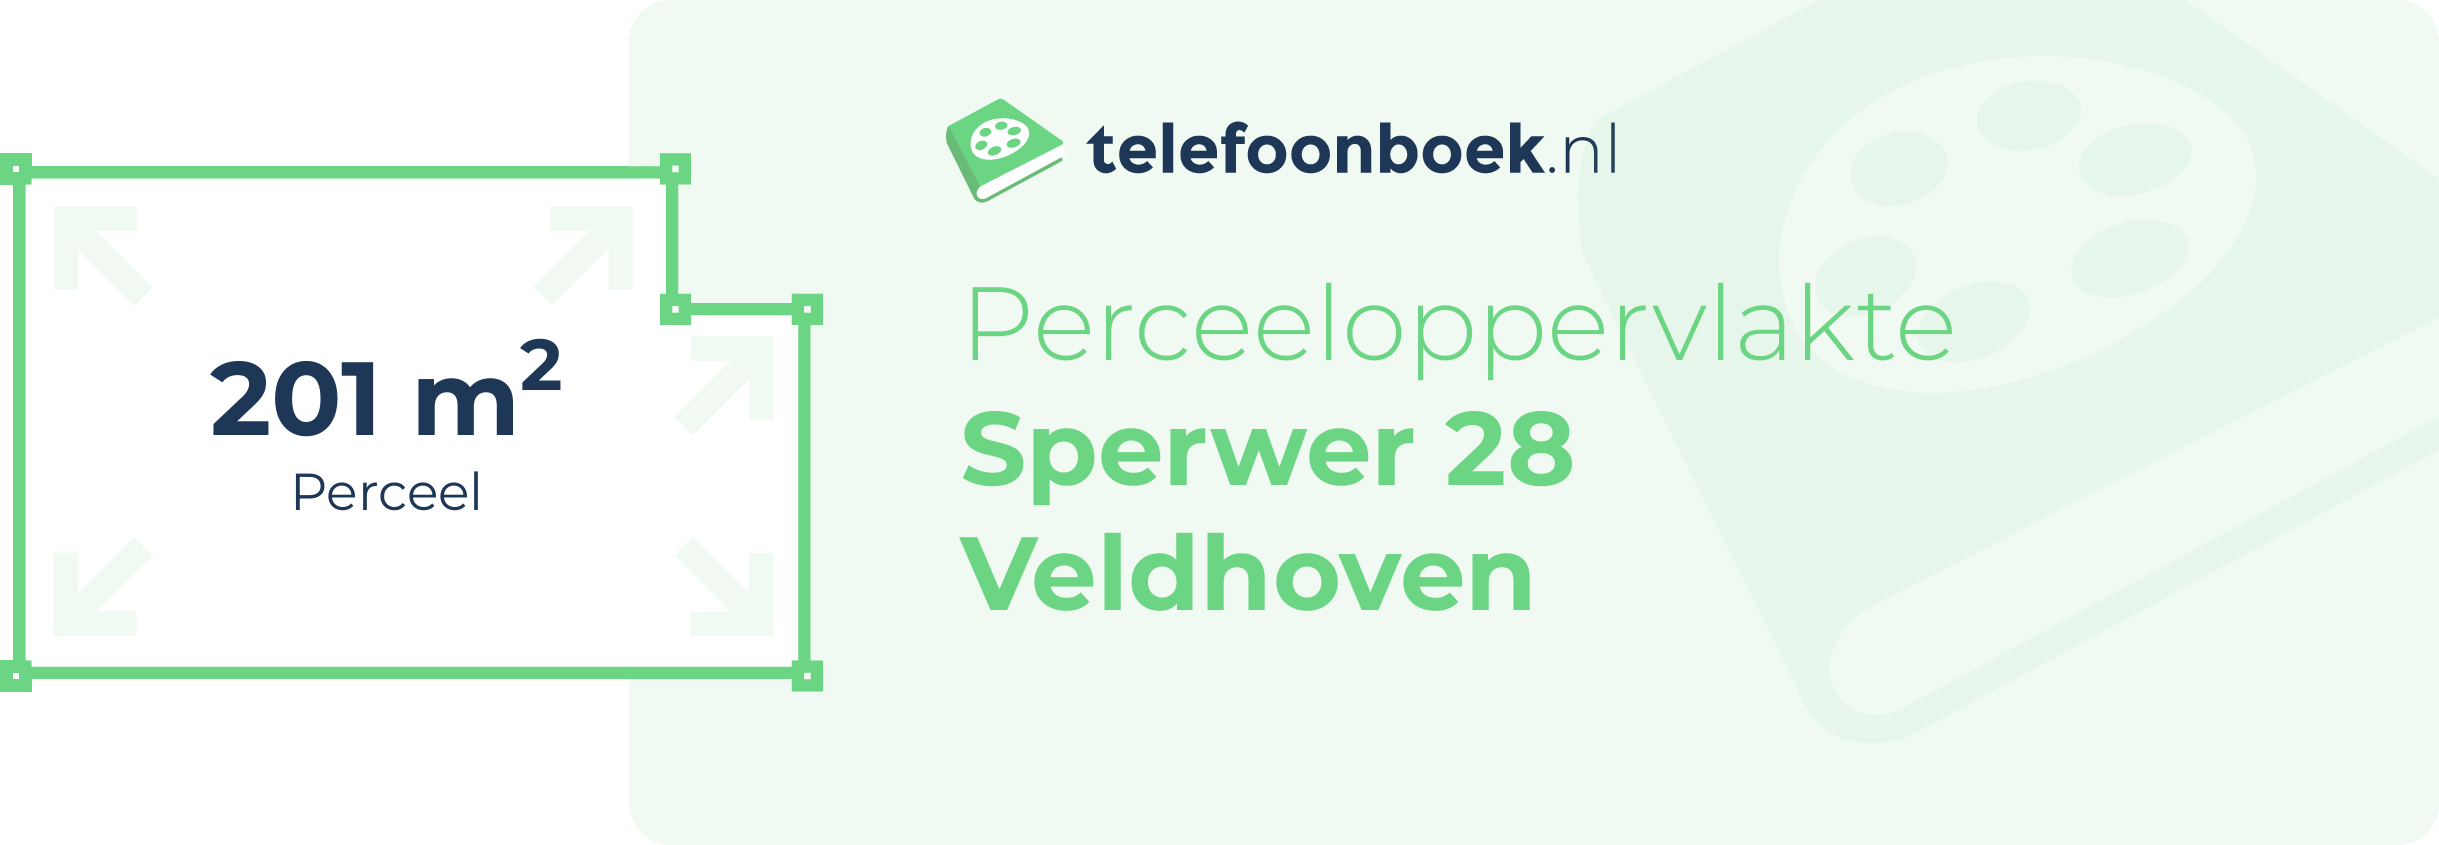 Perceeloppervlakte Sperwer 28 Veldhoven